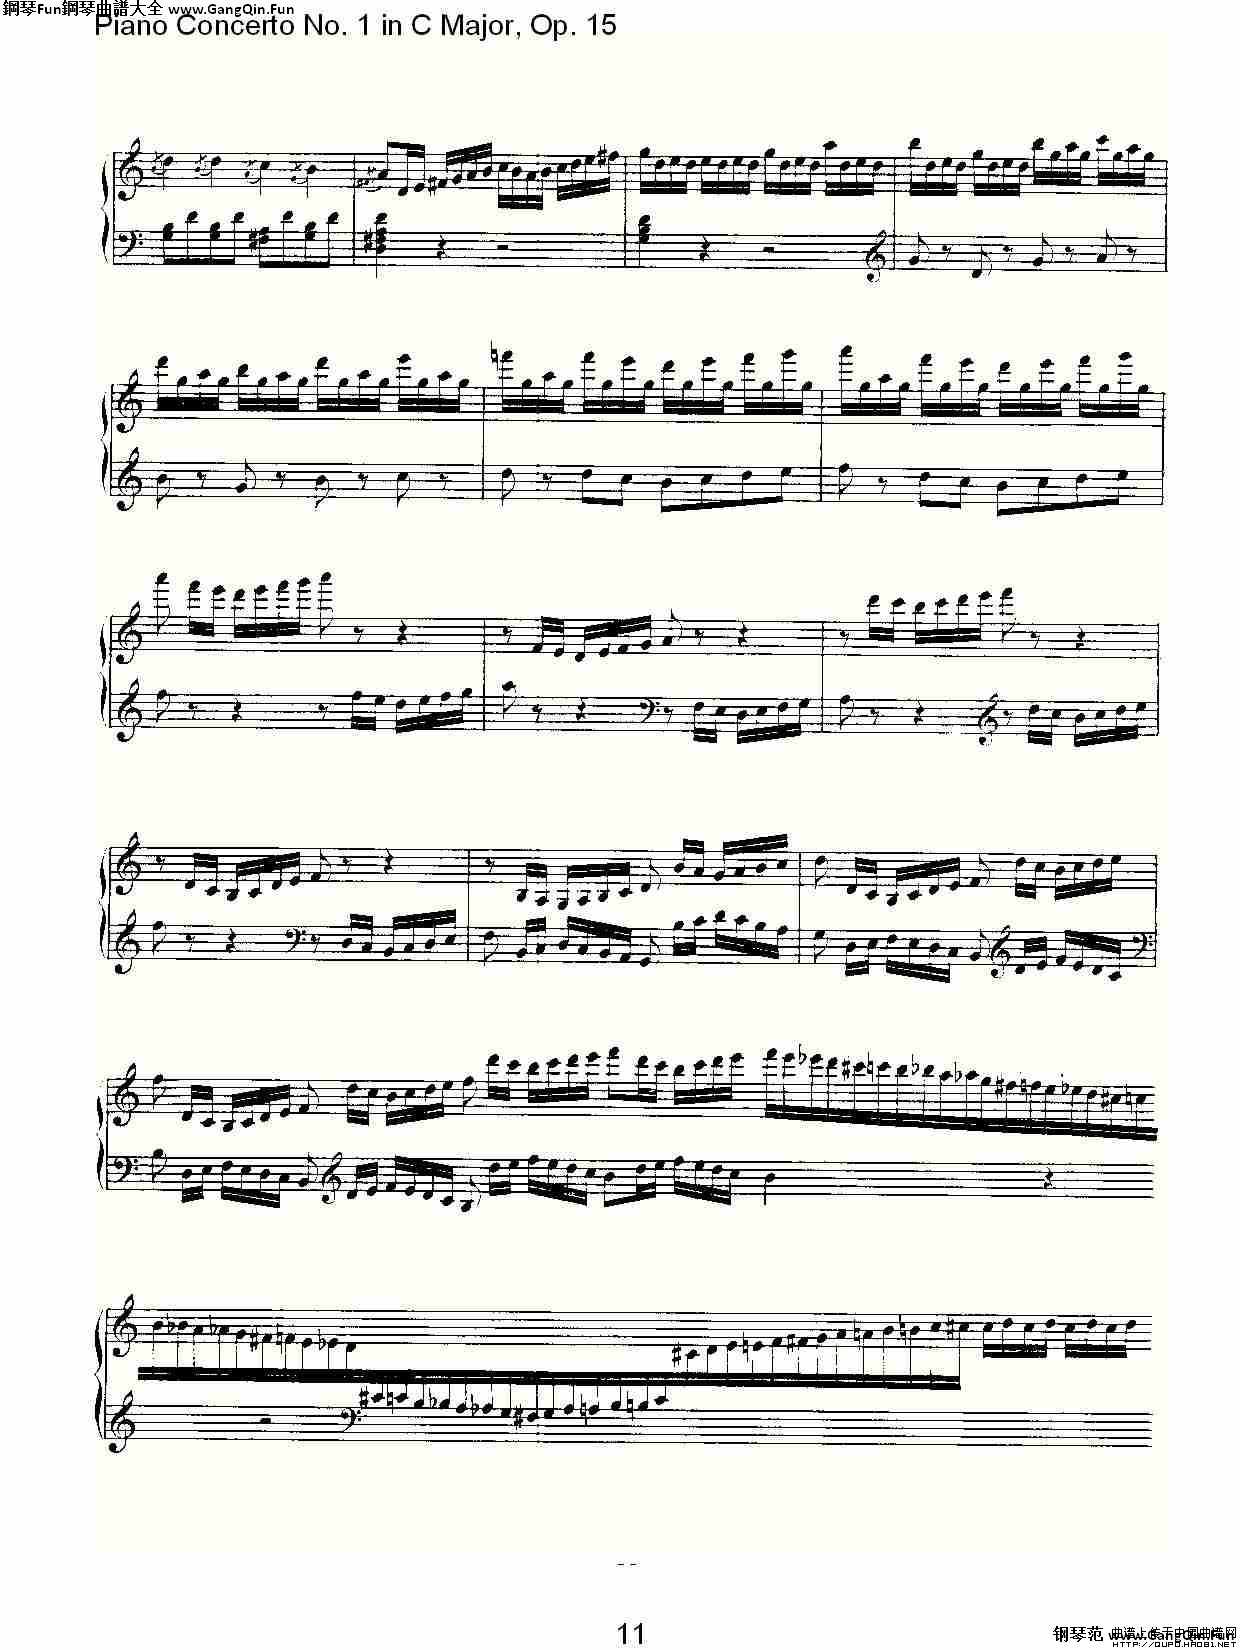 C大調鋼琴第一協奏曲 Op.15 華彩樂段_簡譜